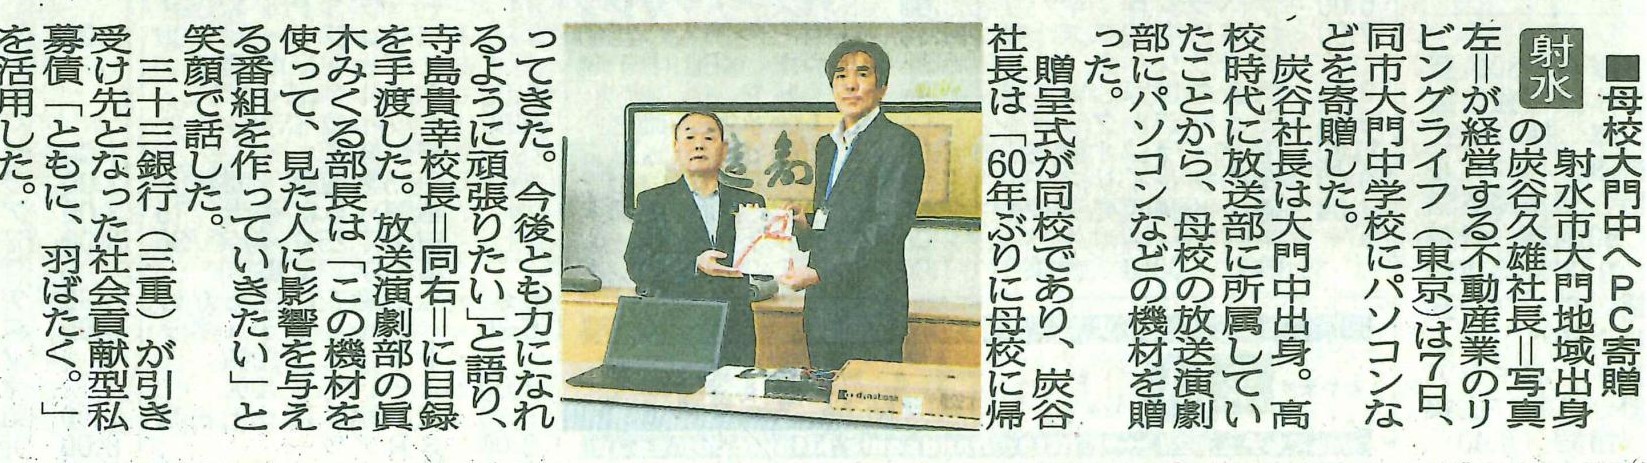 『北日本新聞』に、リビングライフが富山県射水市立大門中学校にパソコンを寄贈した記事が掲載されました。